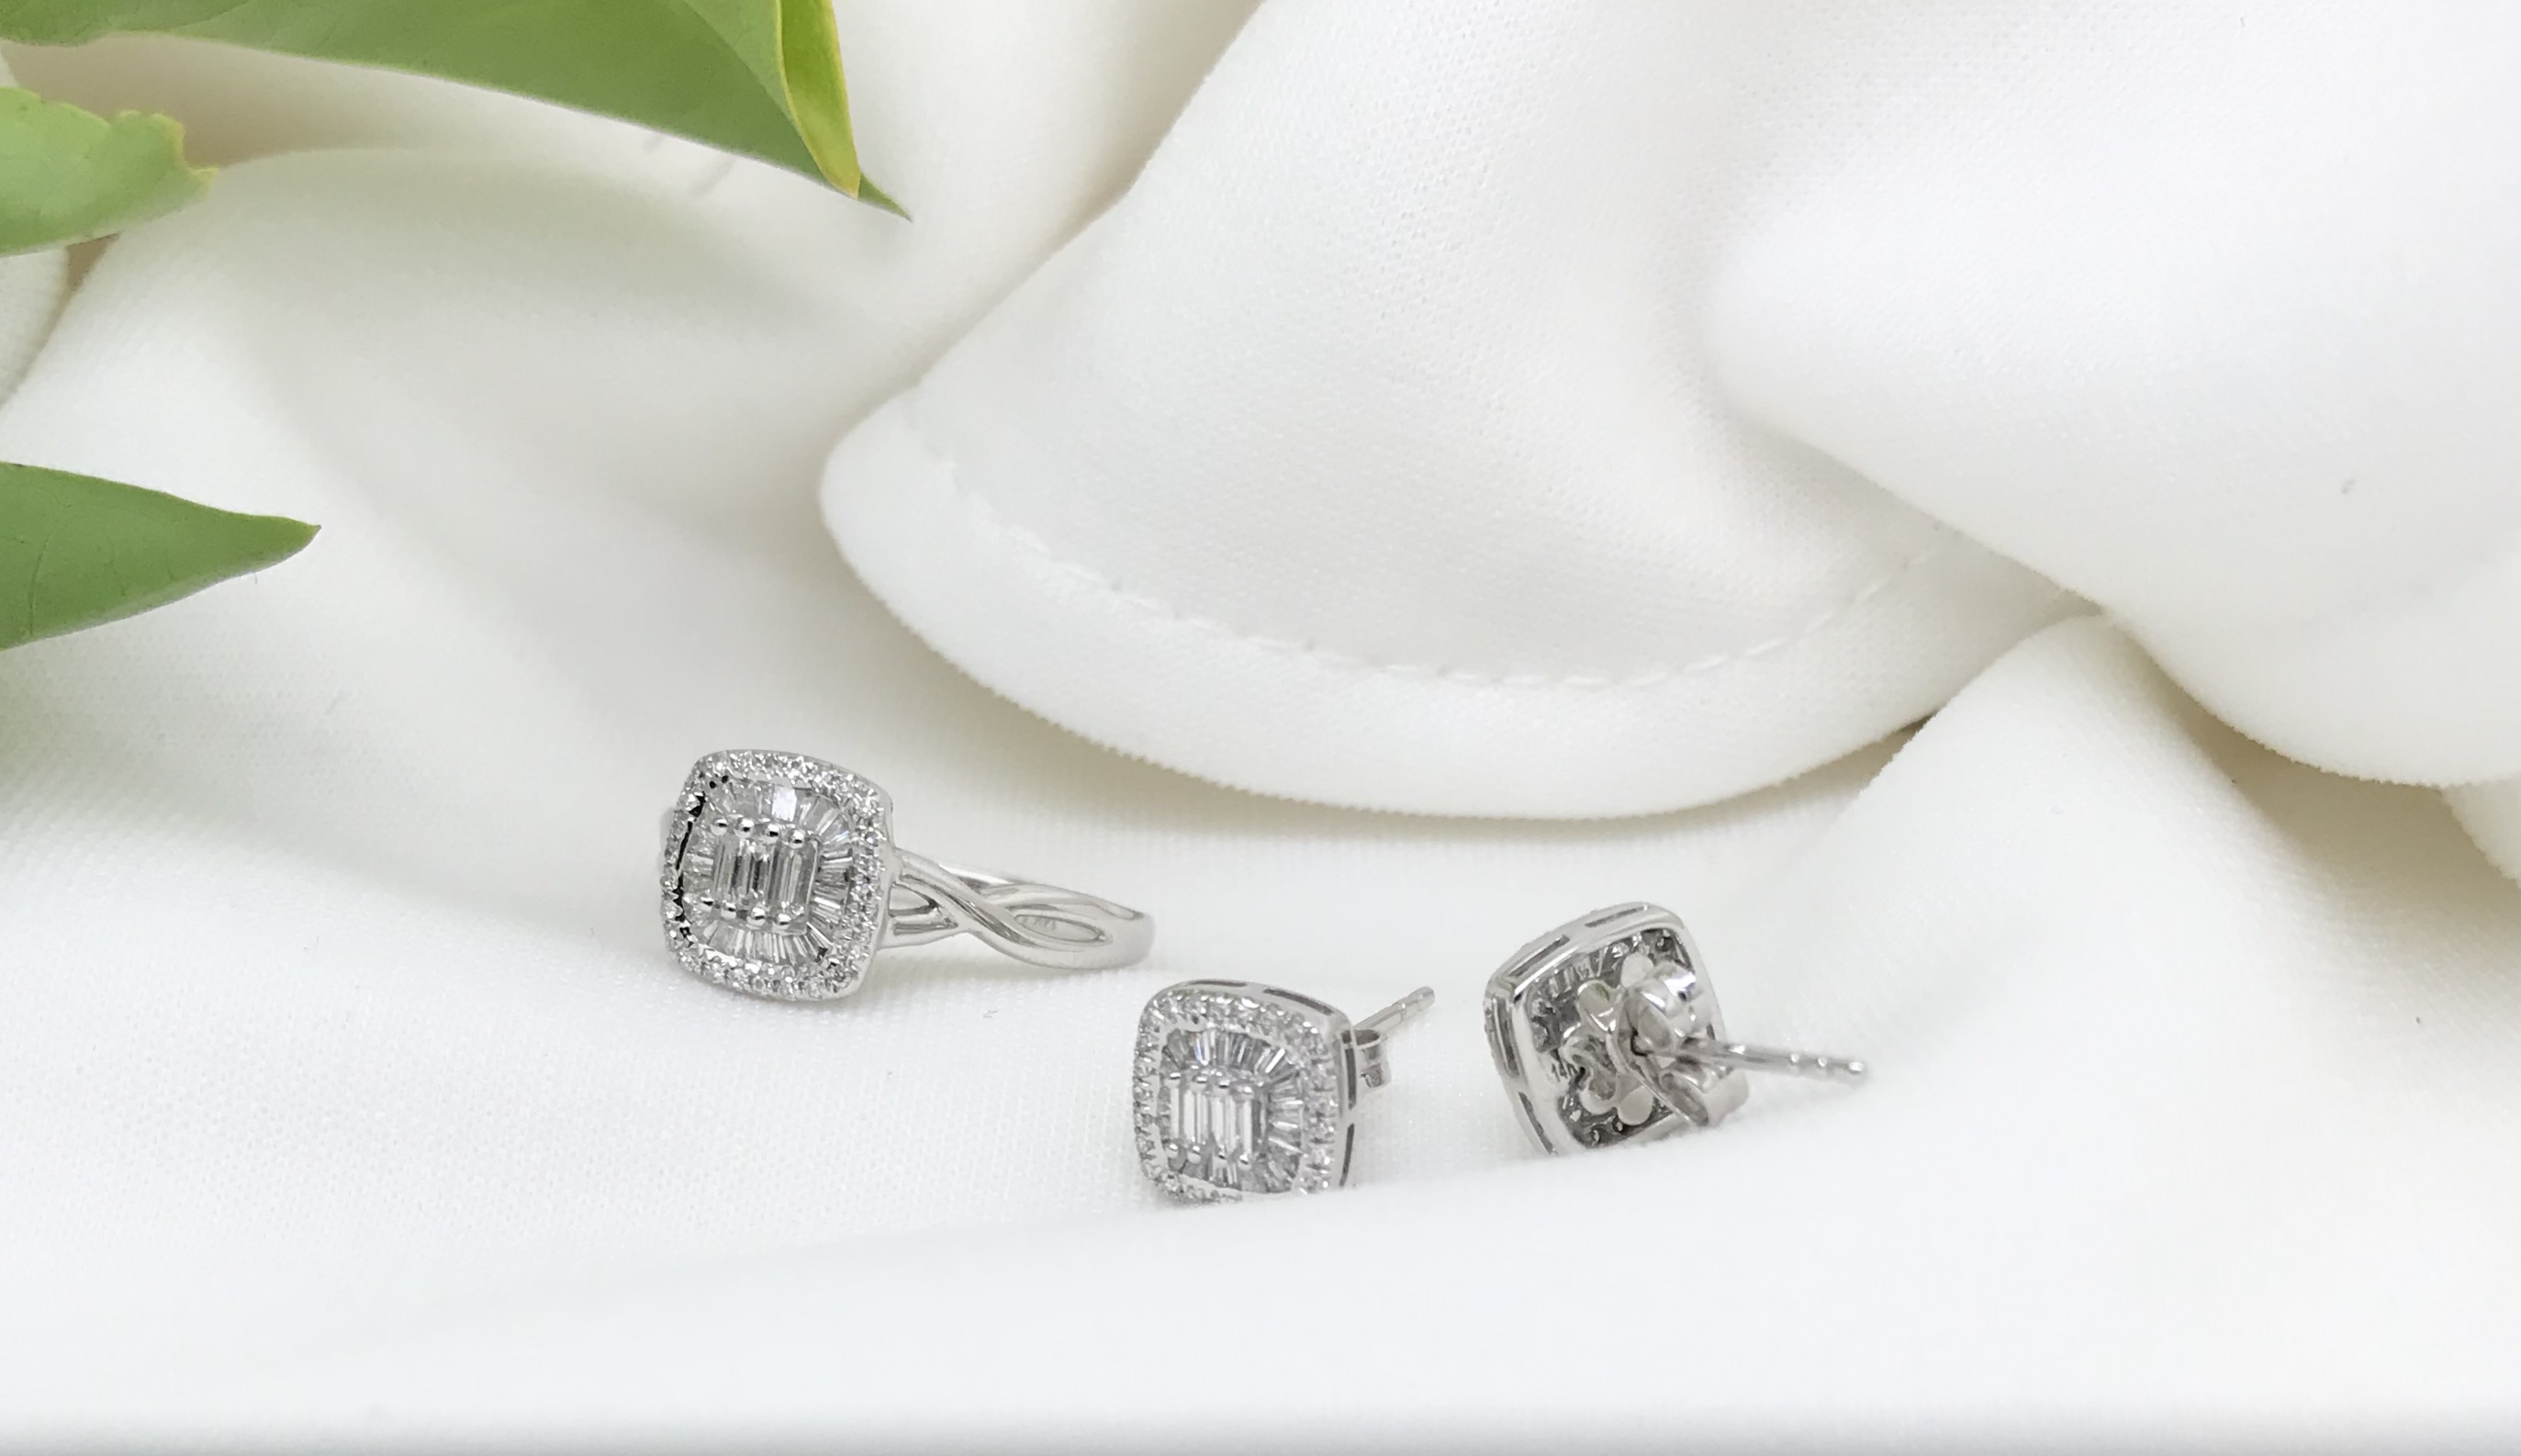 .55 CTW Diamond Ring and Earrings Set 14k White Gold JS55